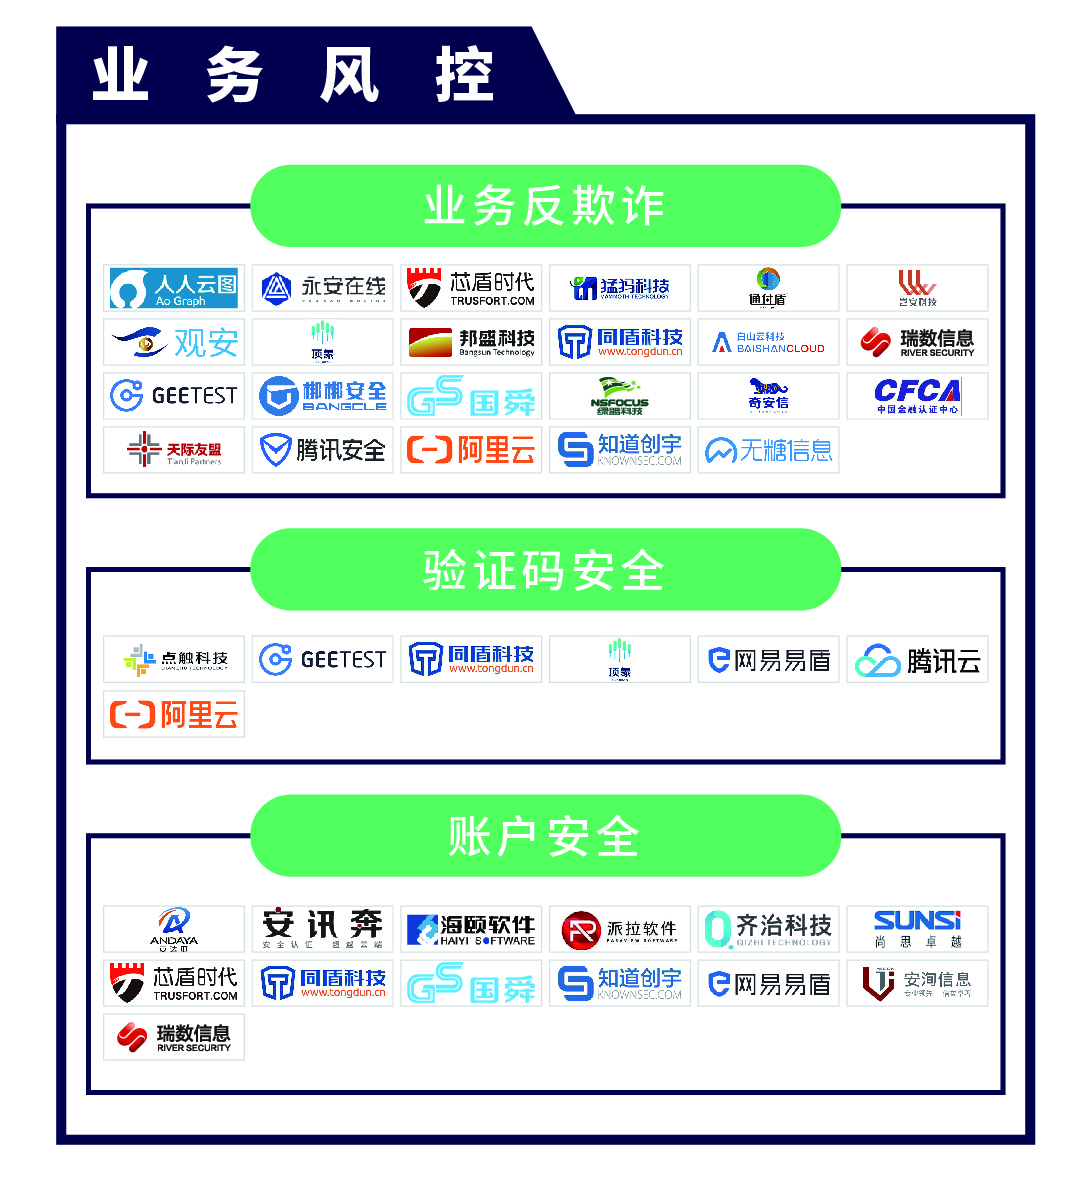 《CCSIP 2020中国网络安全产业全景图》正式发布 | FreeBuf咨询-第10张图片-网盾网络安全培训